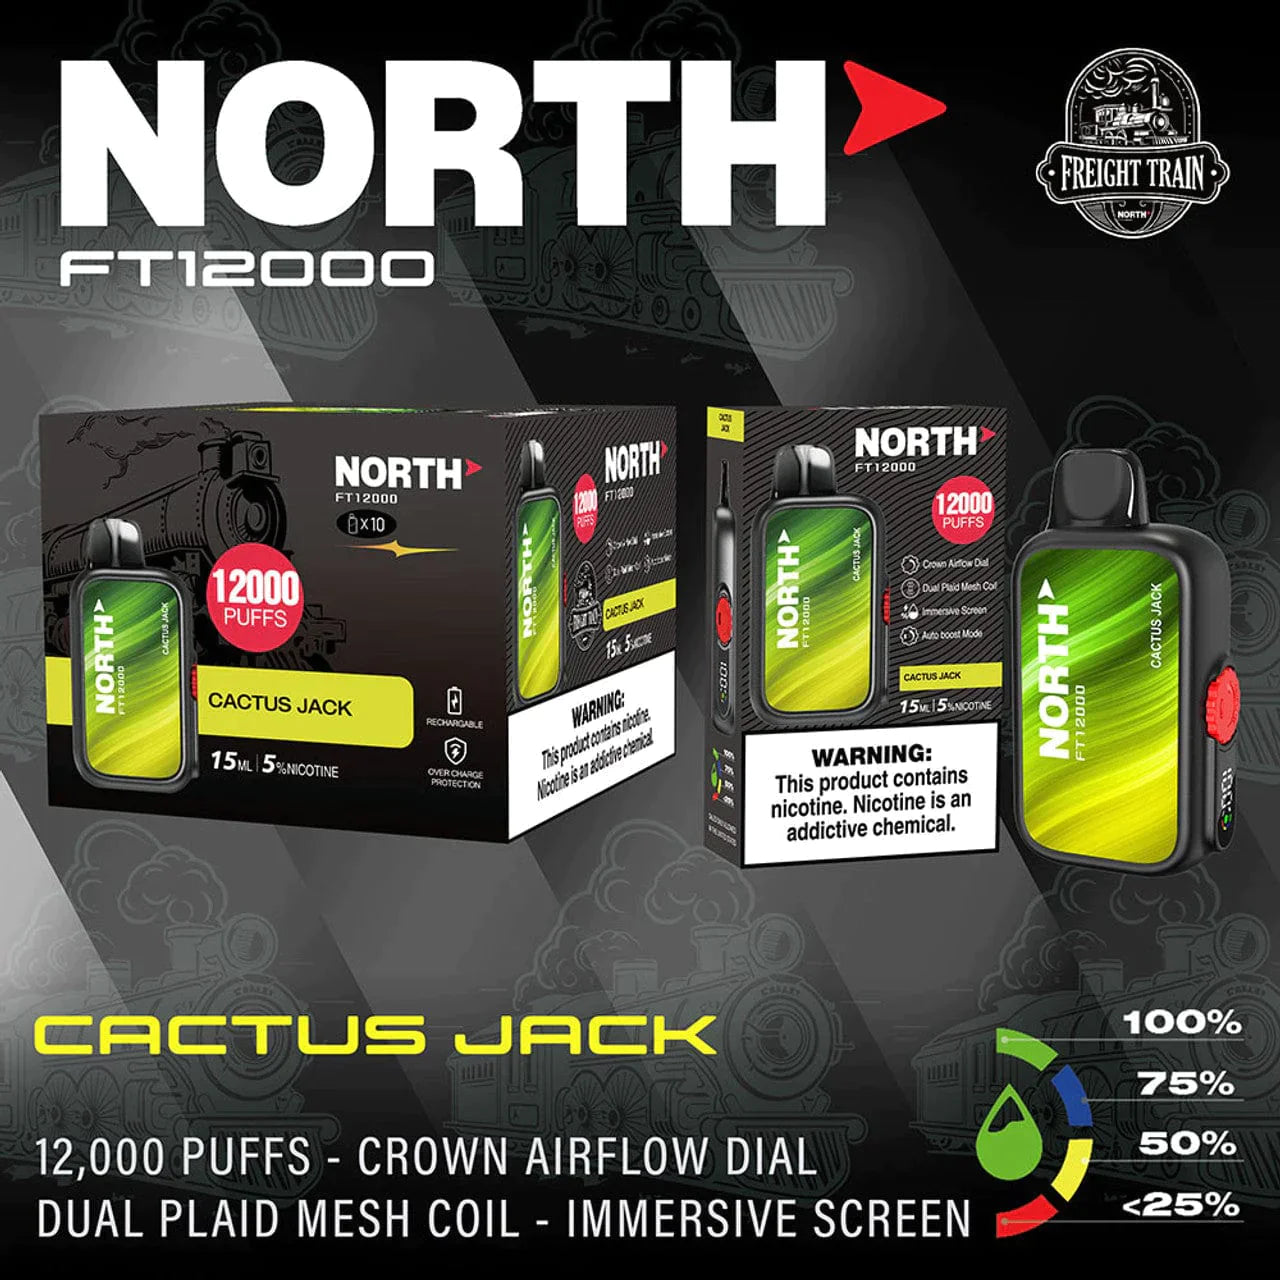 North FT12000 Disposable Vape 15mL Best Flavor Cactus Jack